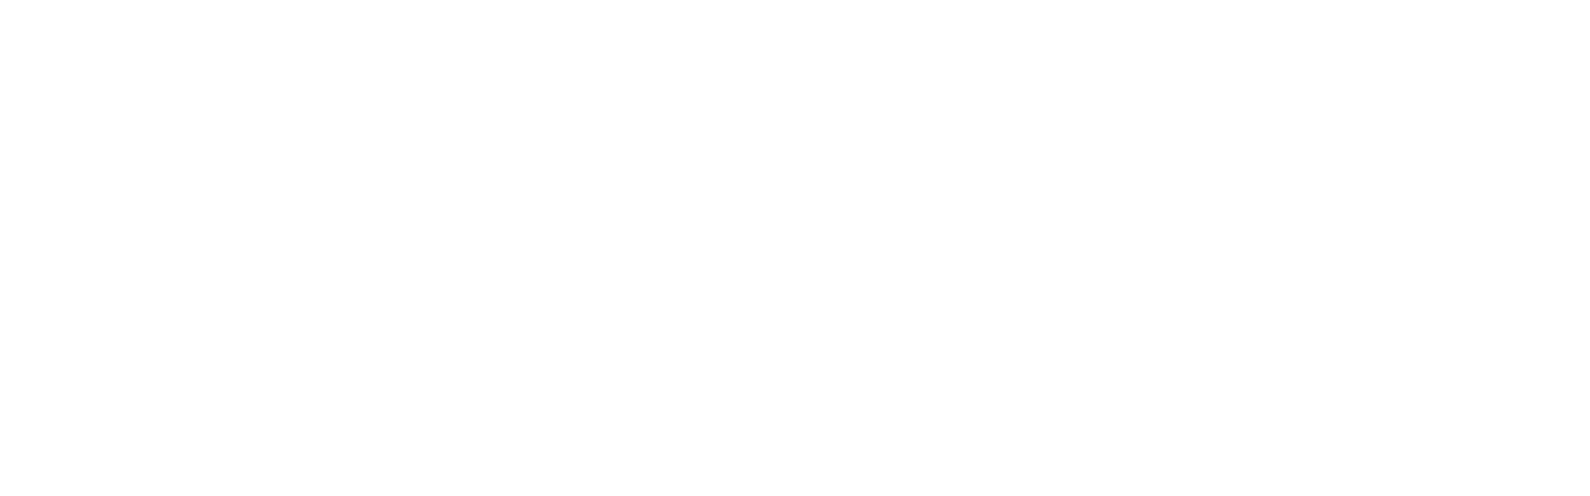 Assa Abloy
 logo pour fonds sombres (PNG transparent)